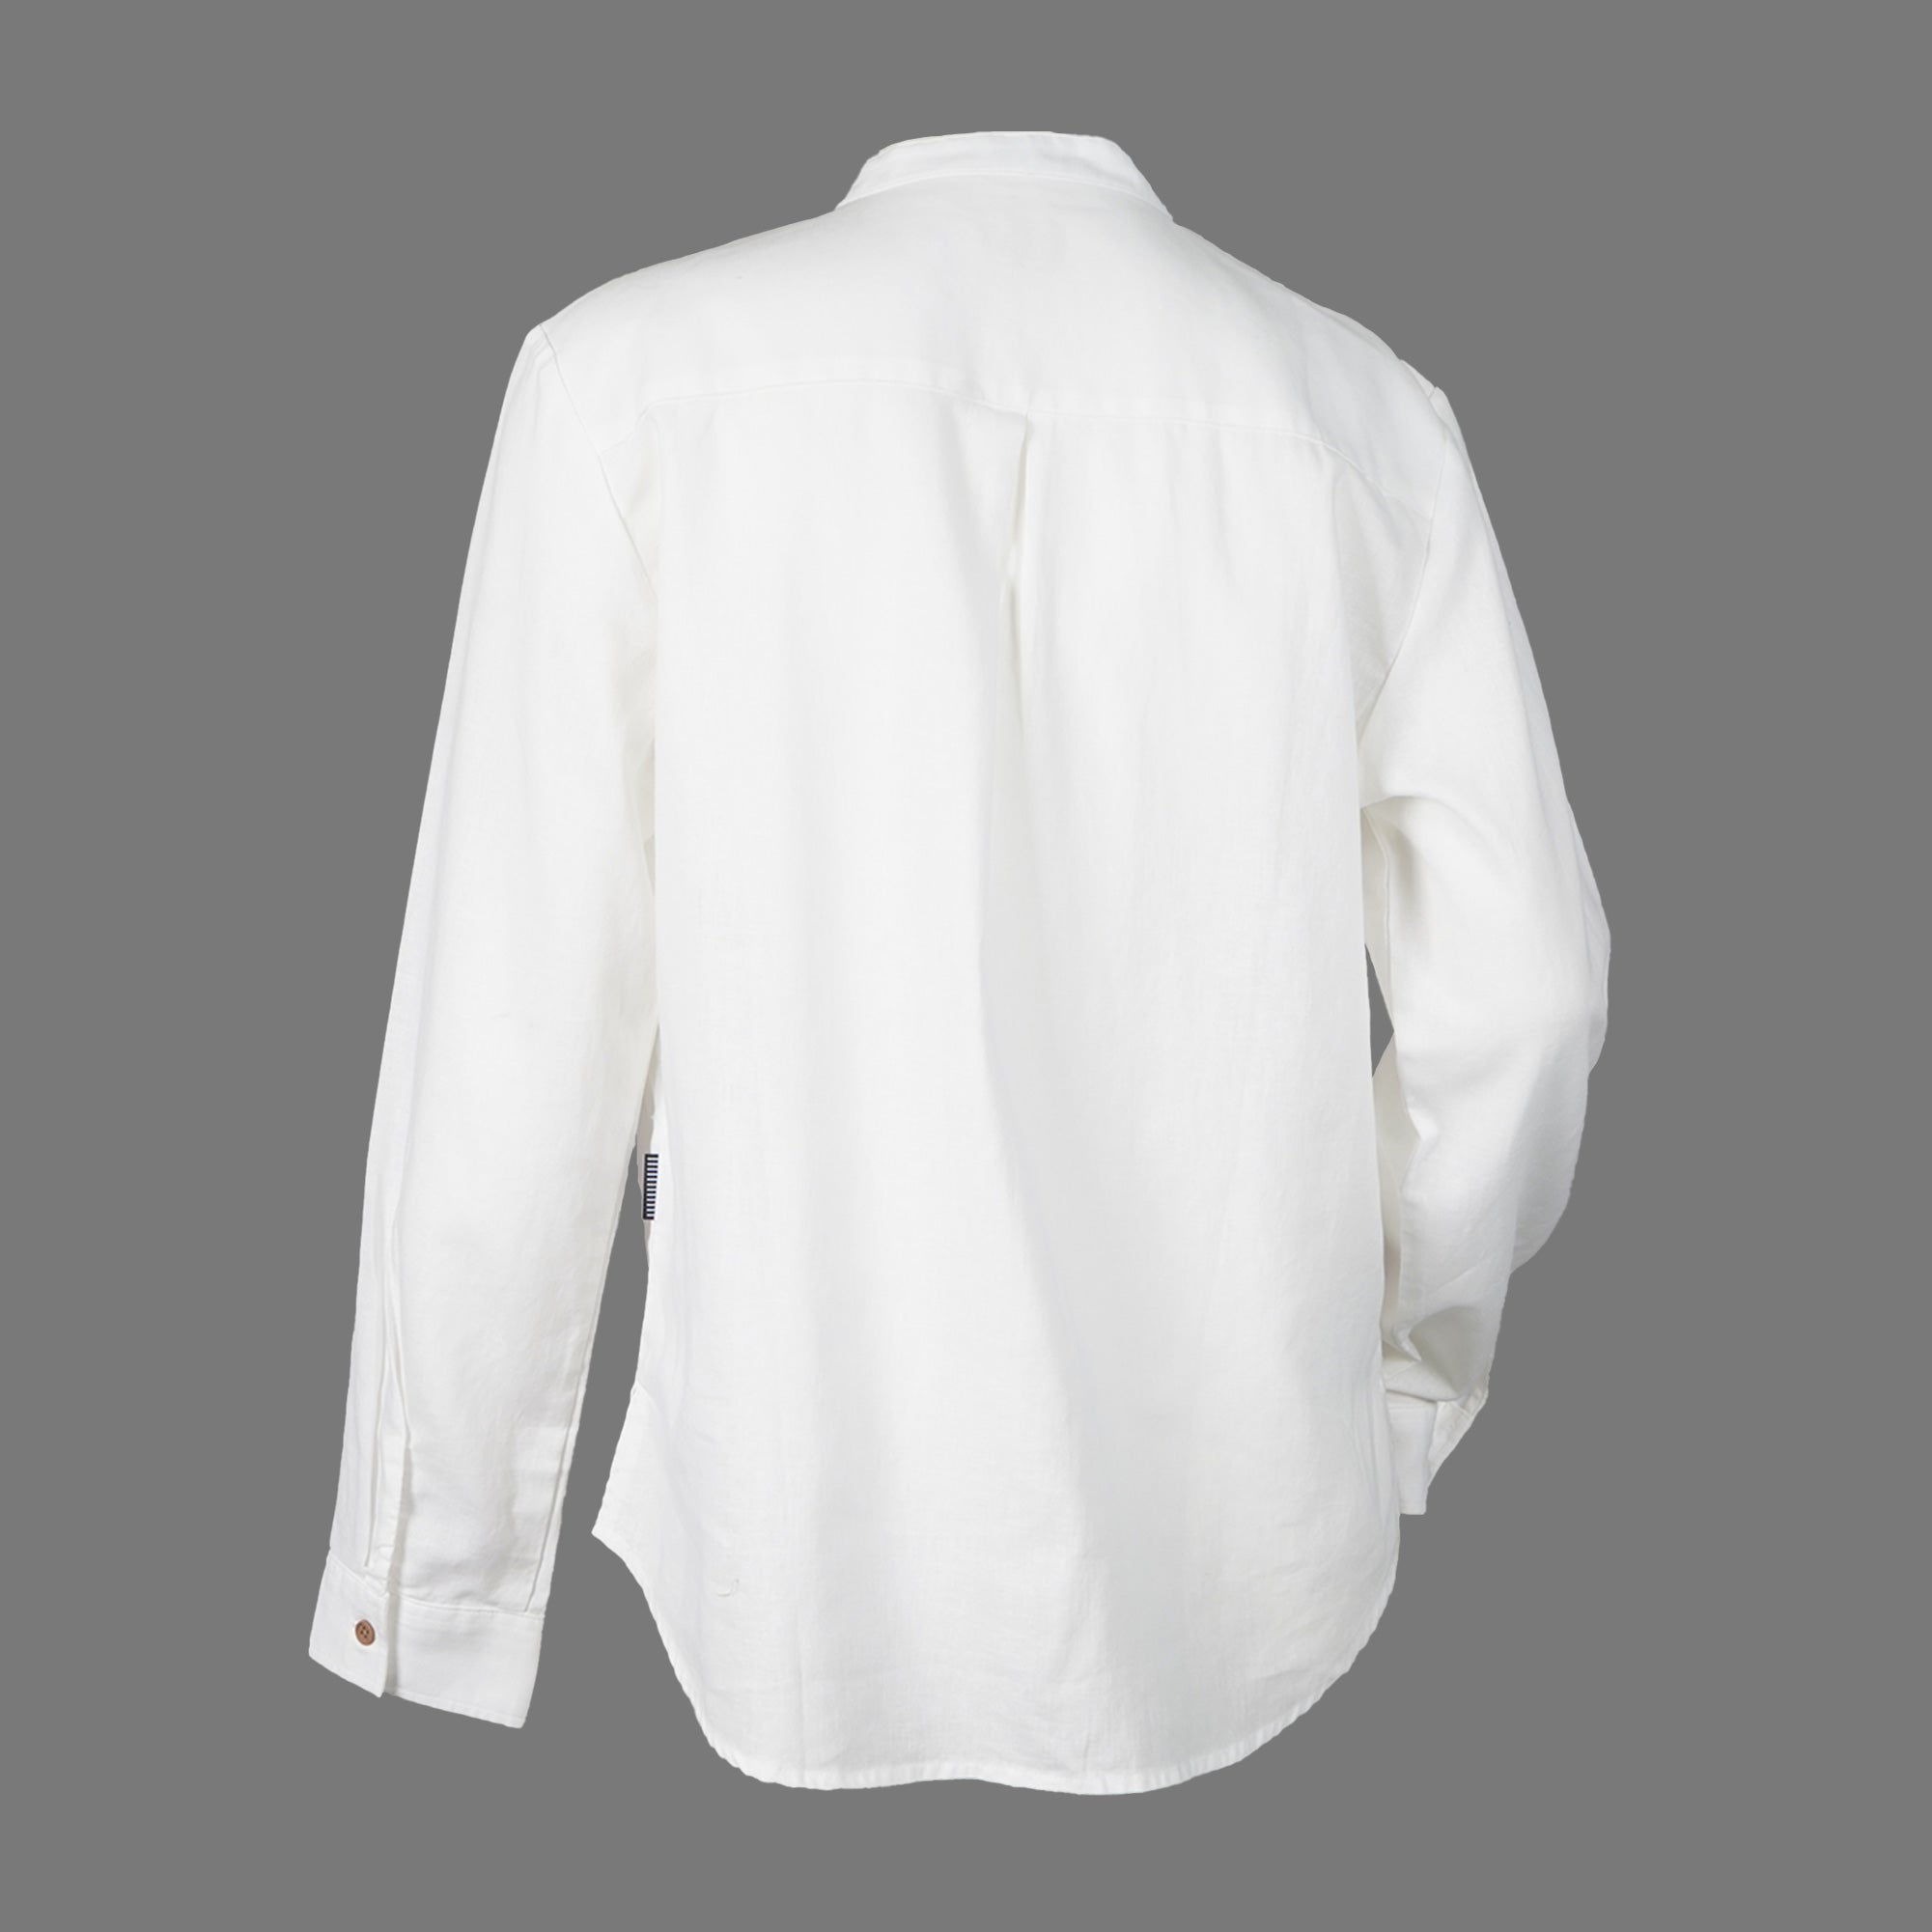 Women's Cotton Linen Long Sleeve Shirt